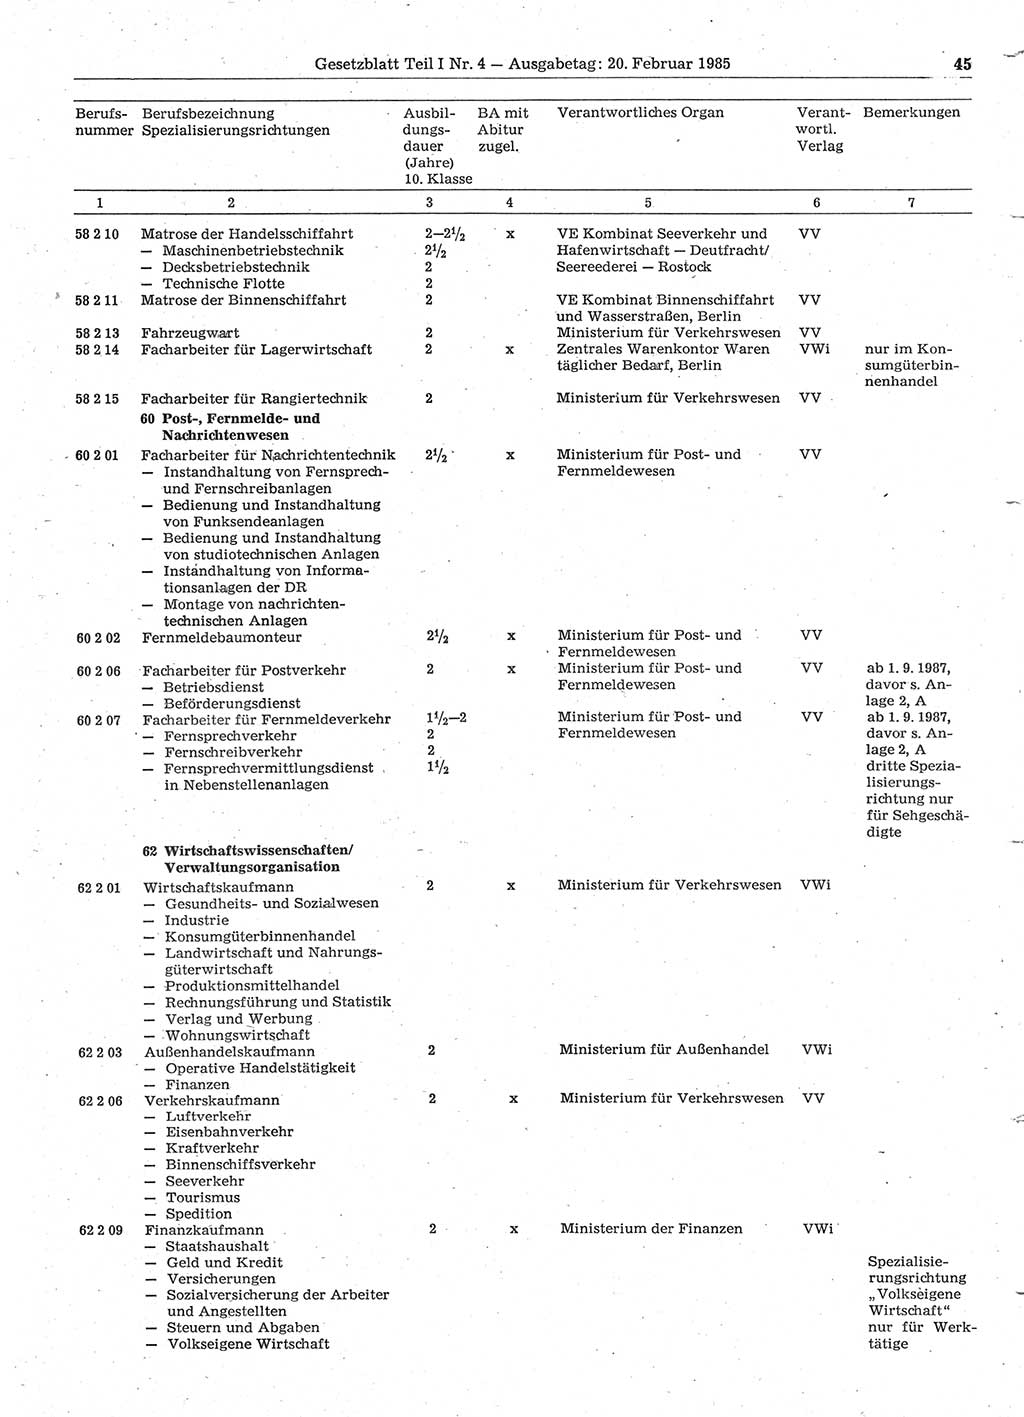 Gesetzblatt (GBl.) der Deutschen Demokratischen Republik (DDR) Teil Ⅰ 1985, Seite 45 (GBl. DDR Ⅰ 1985, S. 45)